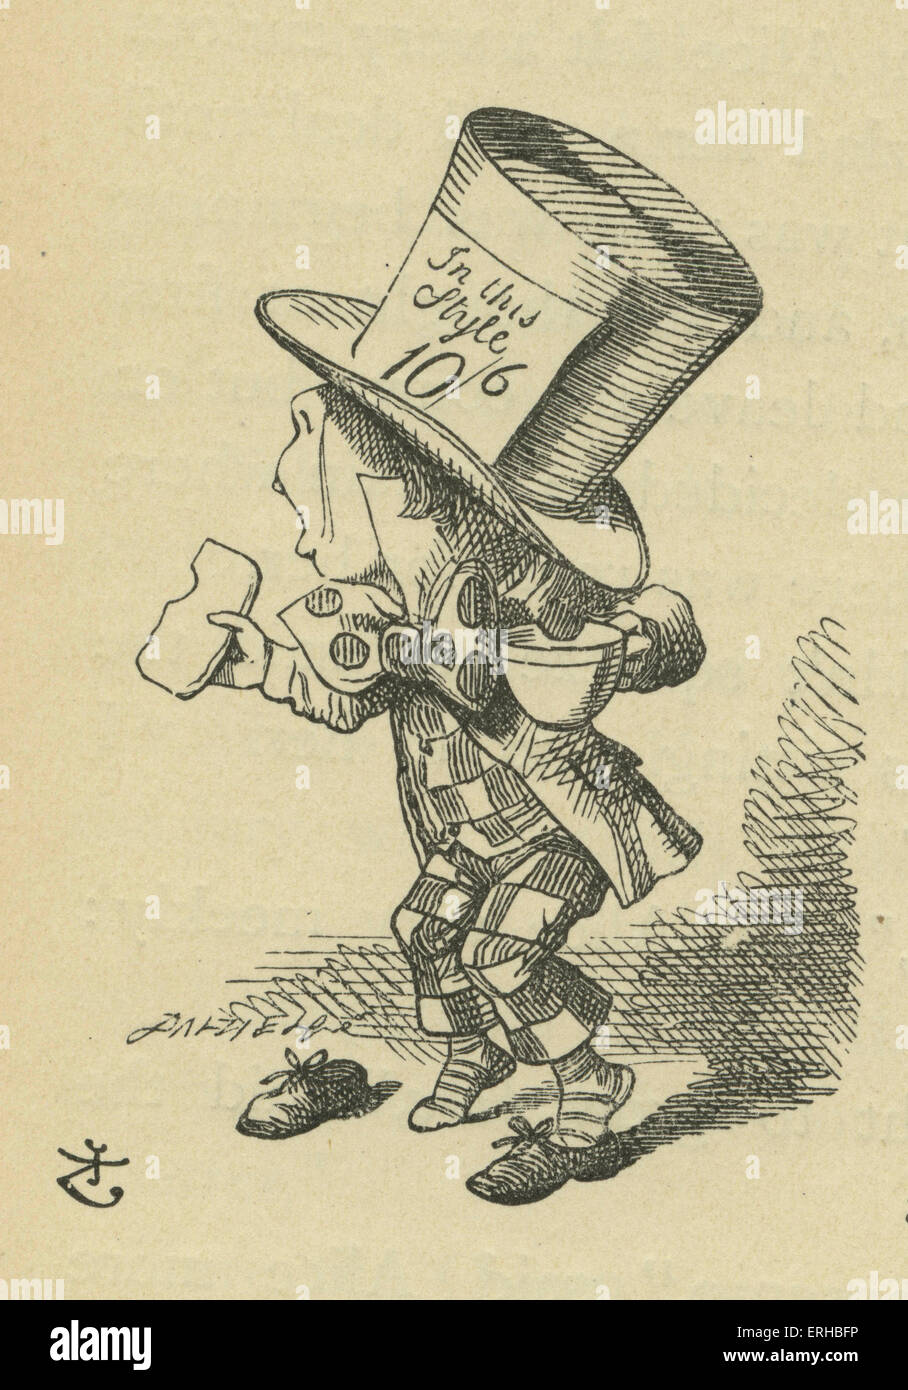 The Mad Hatter, Lewis Carroll (1832-1898) livre 'Alice's Adventures in Wonderland". Illustré par John Tenniel. The Mad Hatter en larmes après avoir perdu les tartelettes. Banque D'Images